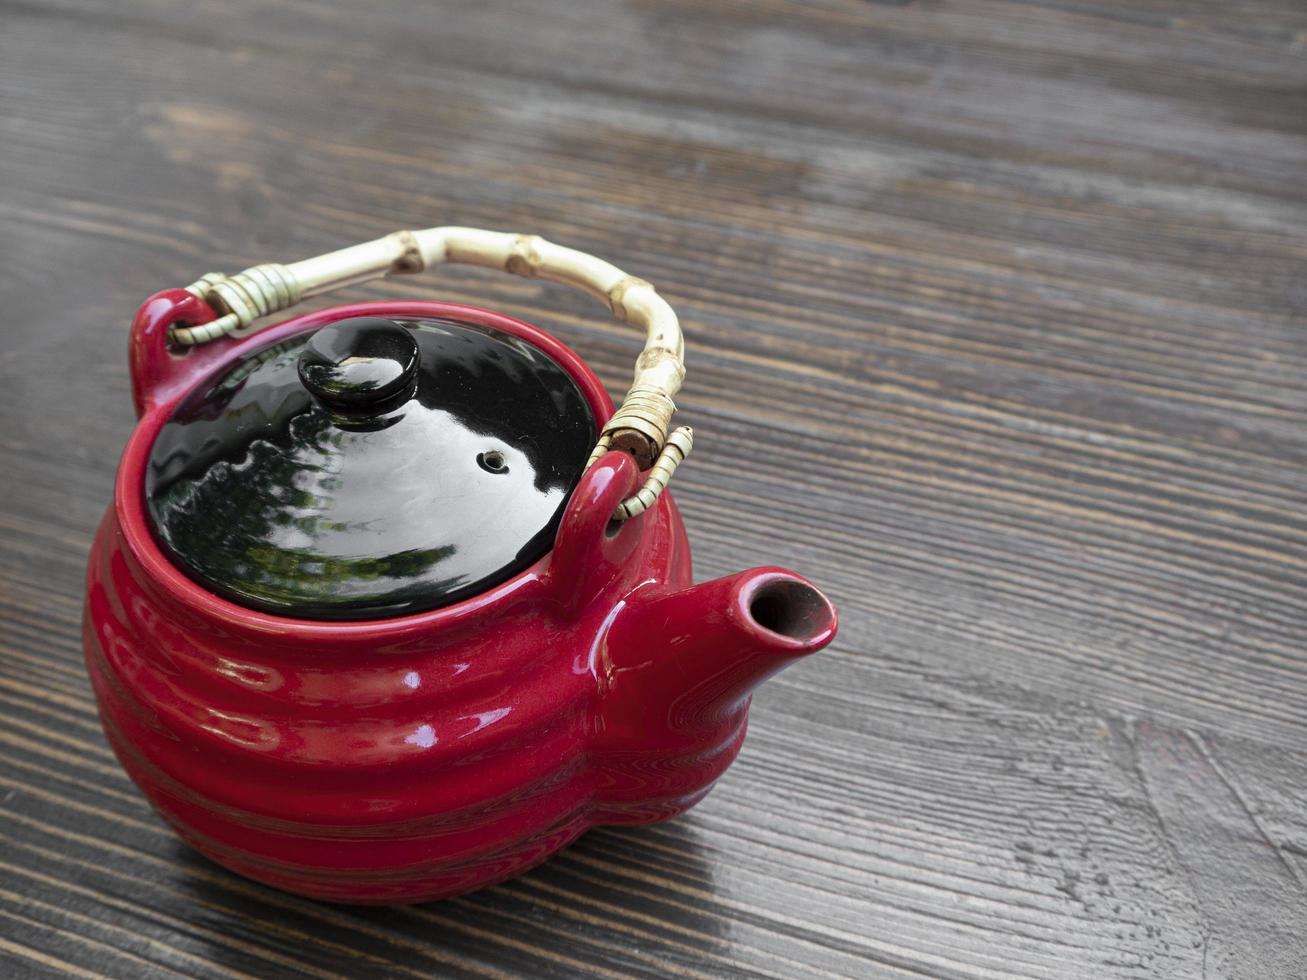 théière chinoise rouge sur une table en bois photo